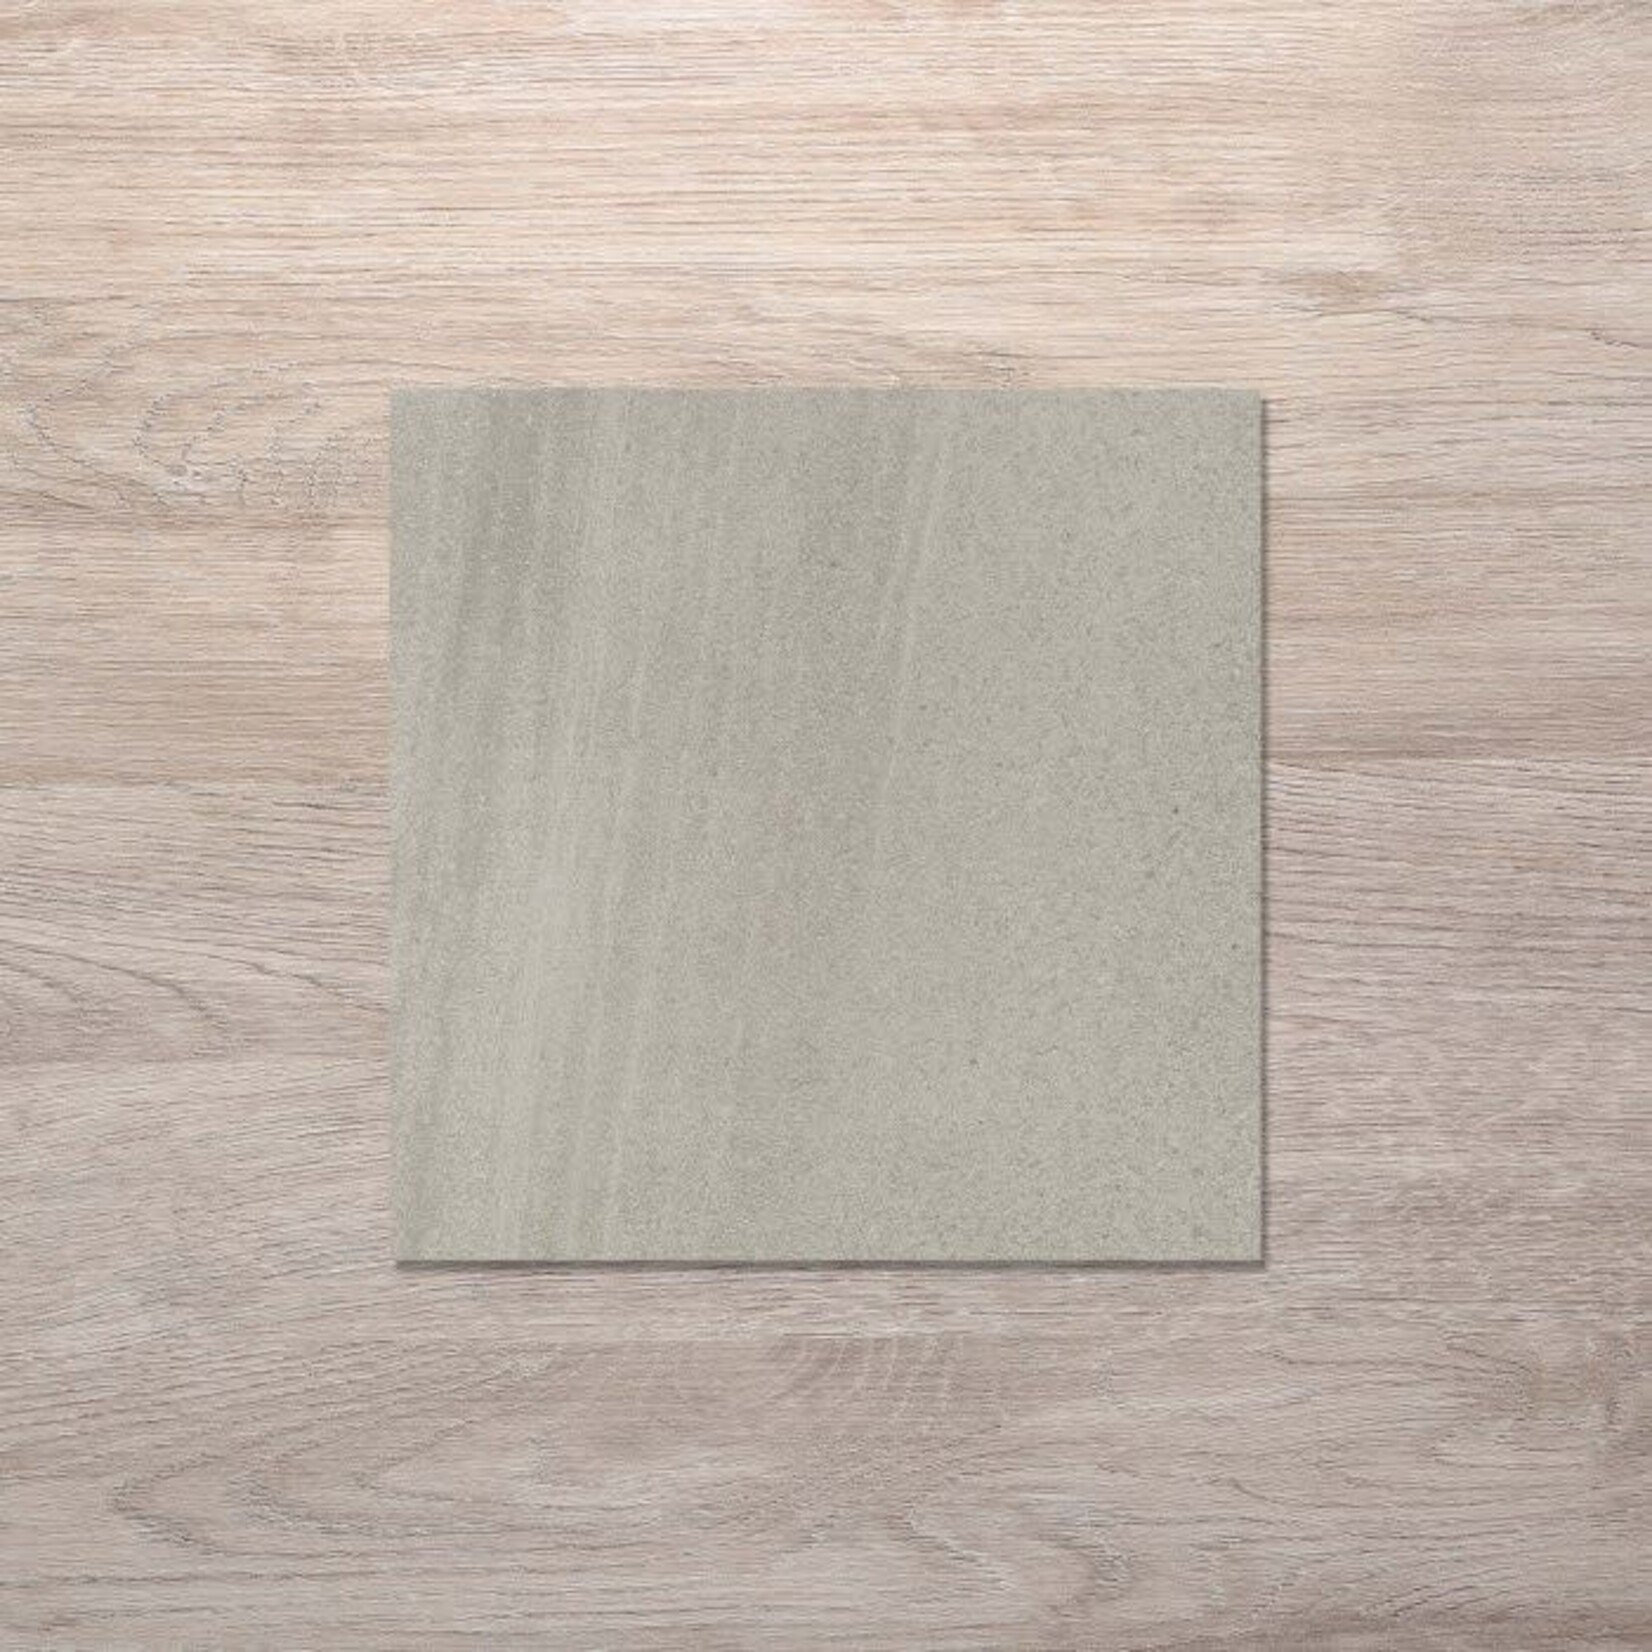 Johnson Tiles Desert Taupe 450x450 Grit